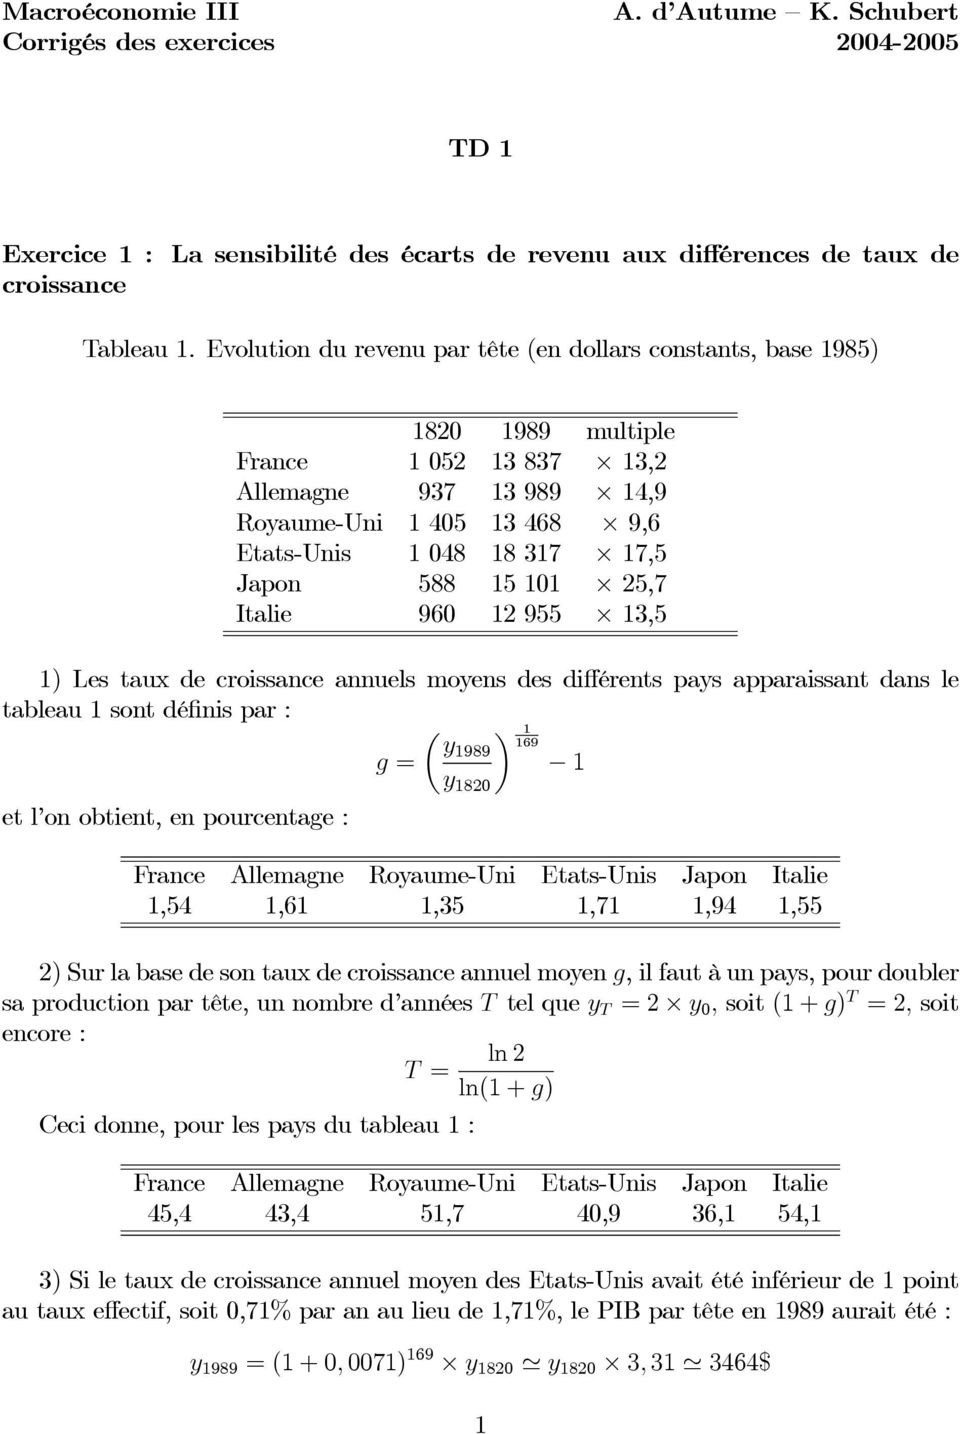 TD 1. Exercice 1 : La sensibilité des écarts de revenu aux différences de  taux de croissance - PDF Free Download